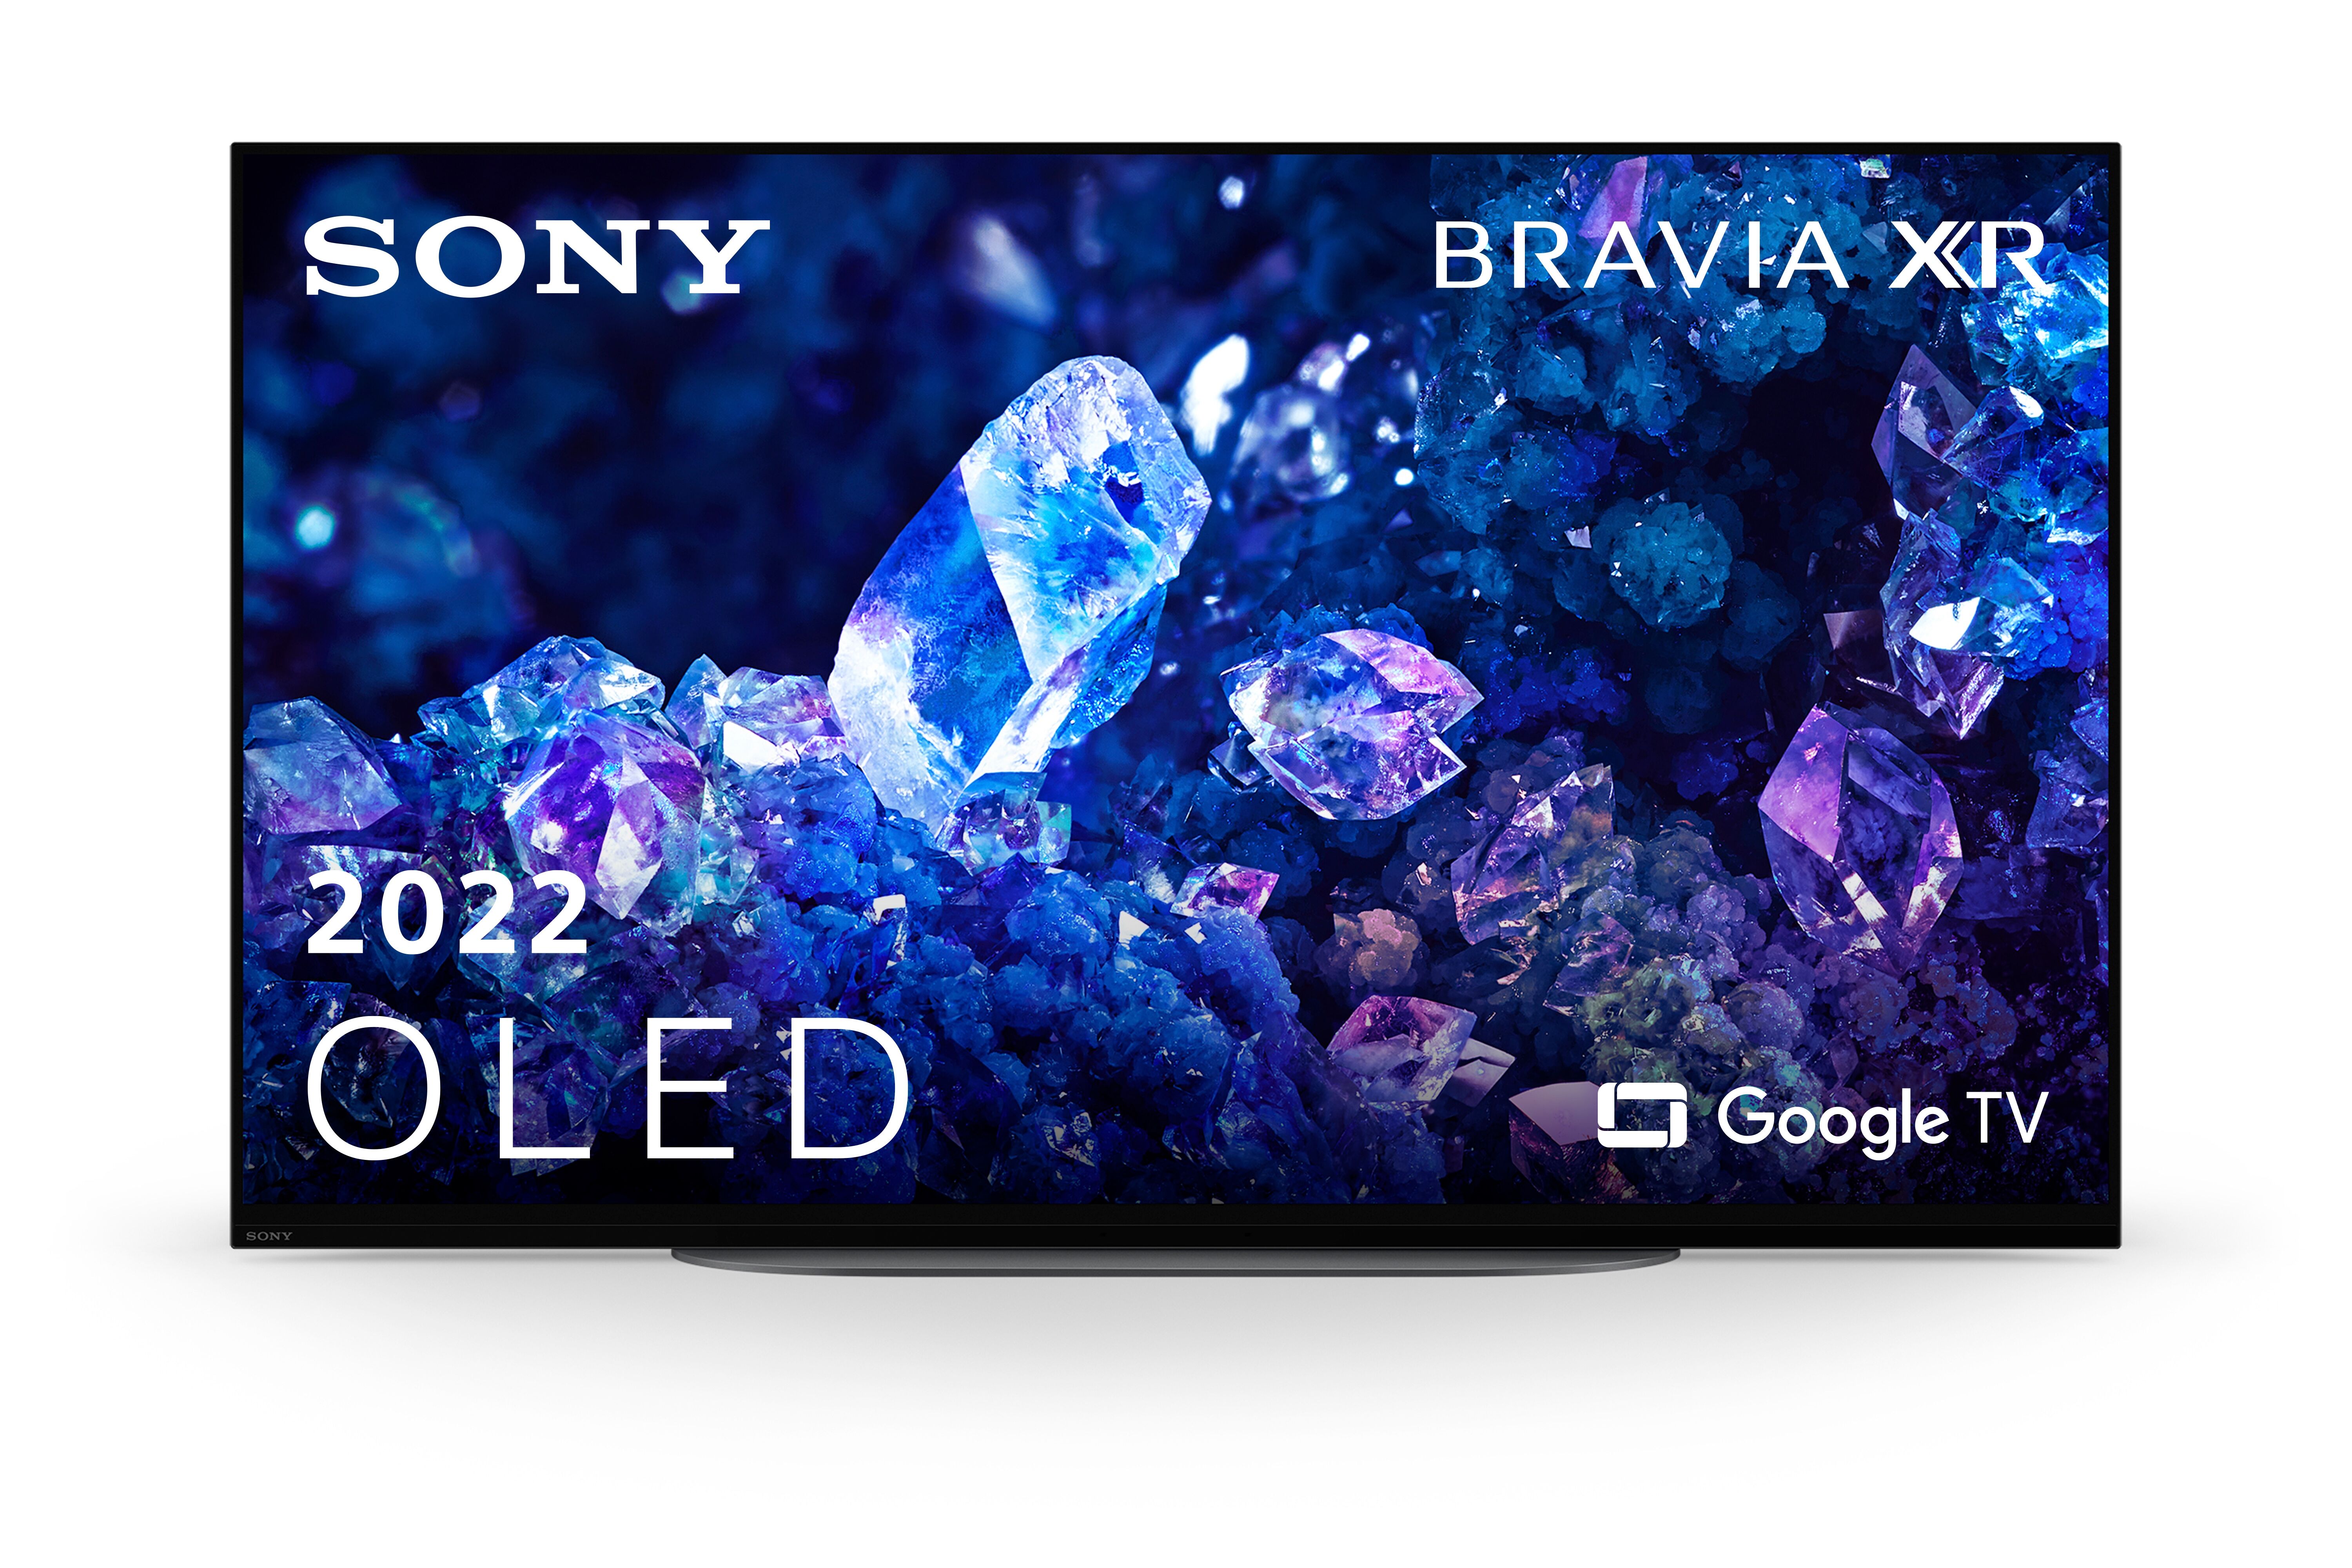 Sony TV OLED 42" 4K HDR T2 XR42A90KAE Google